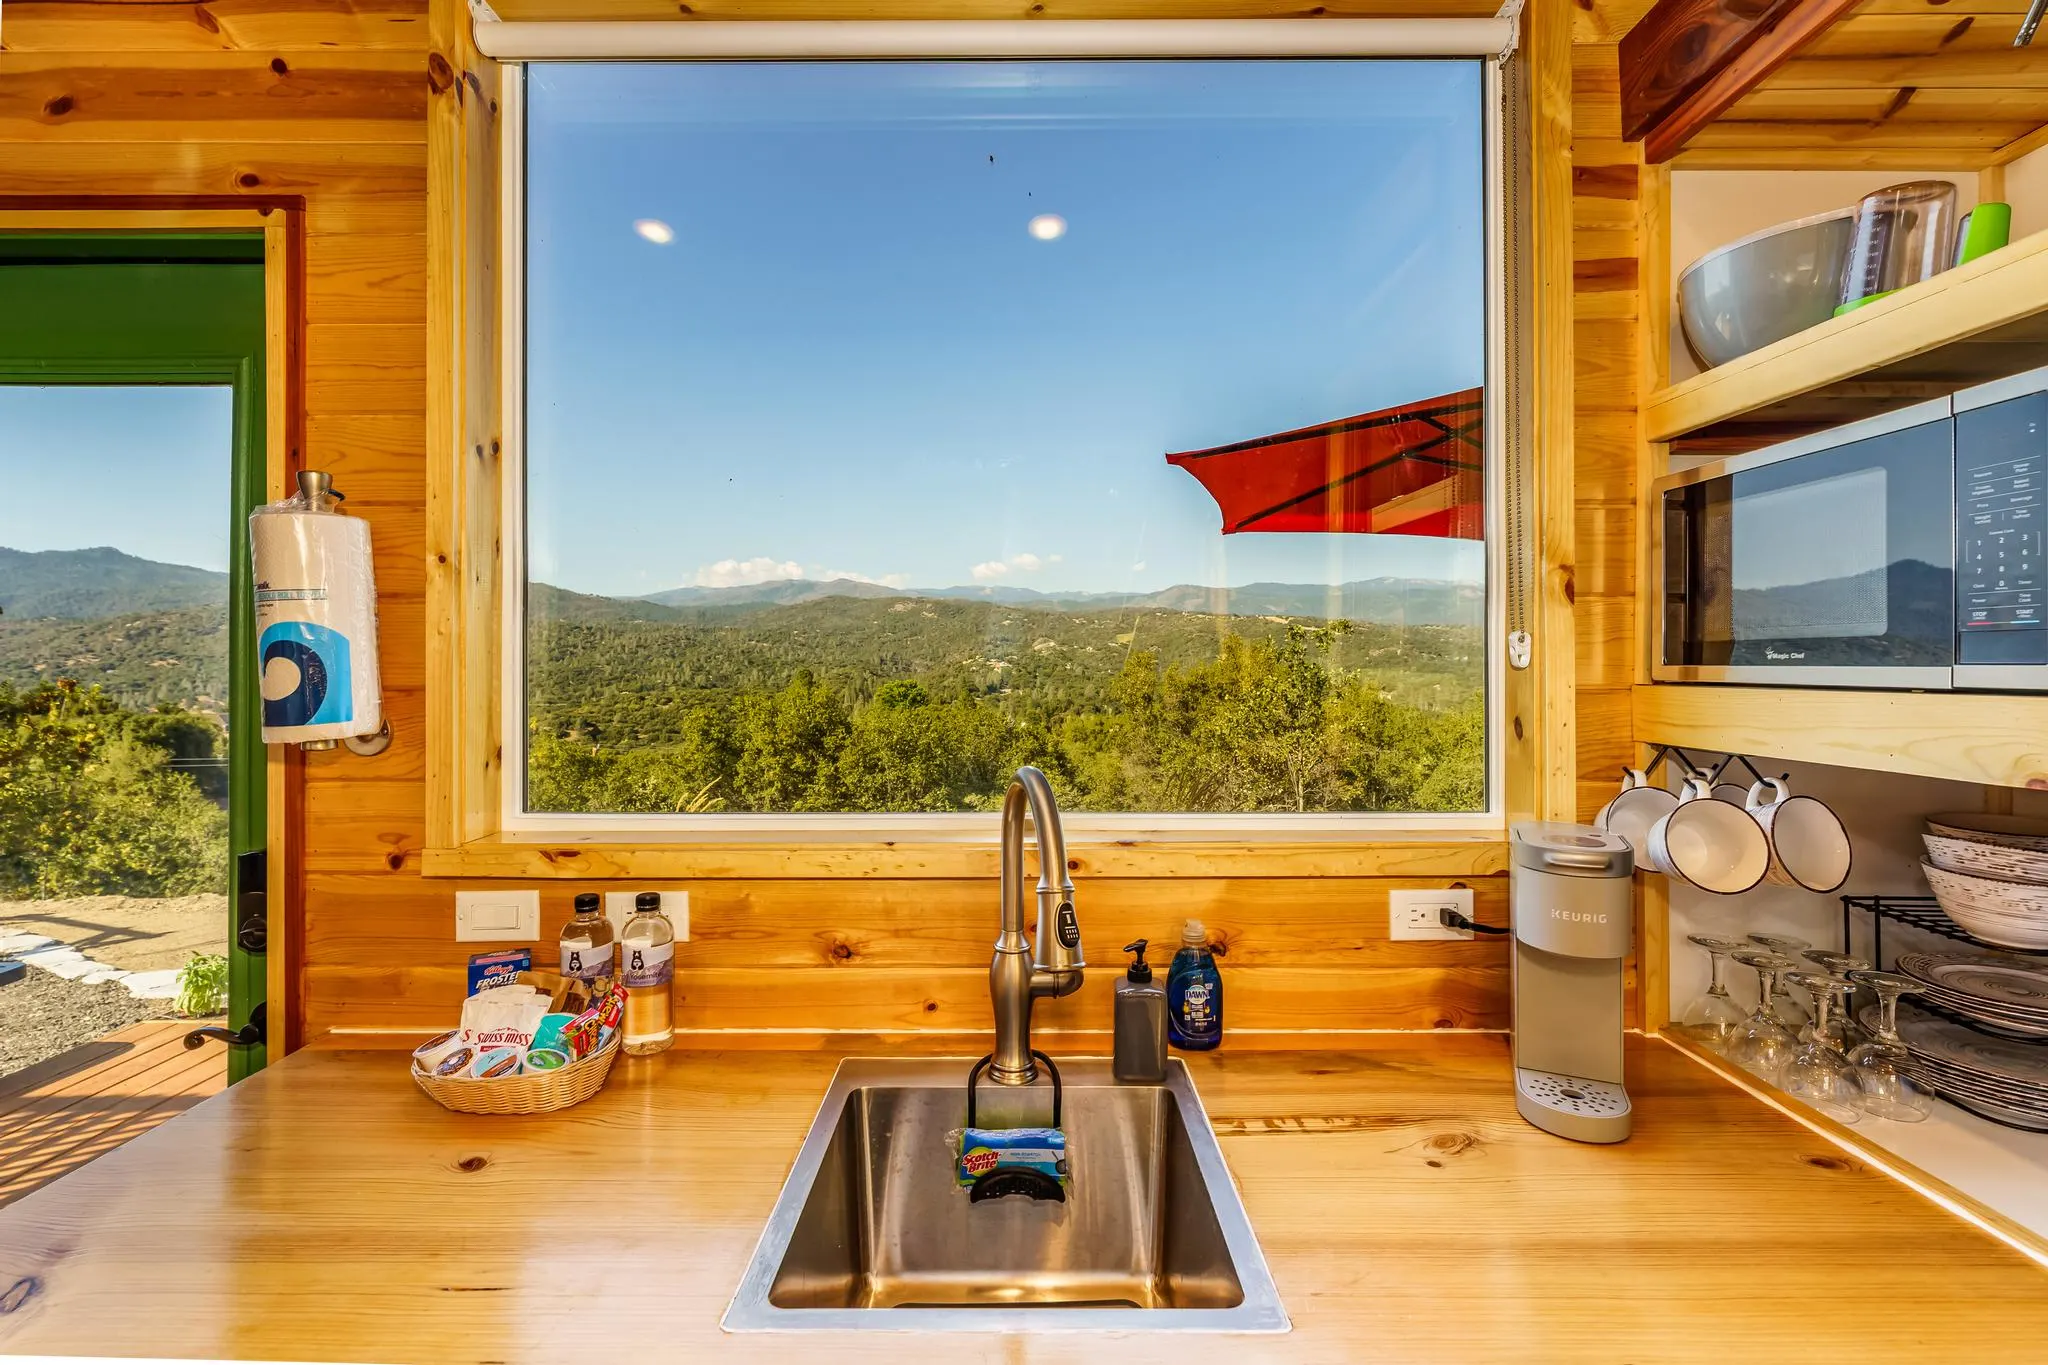 Kitchen Window - Among the Stars at Yosemite National Park